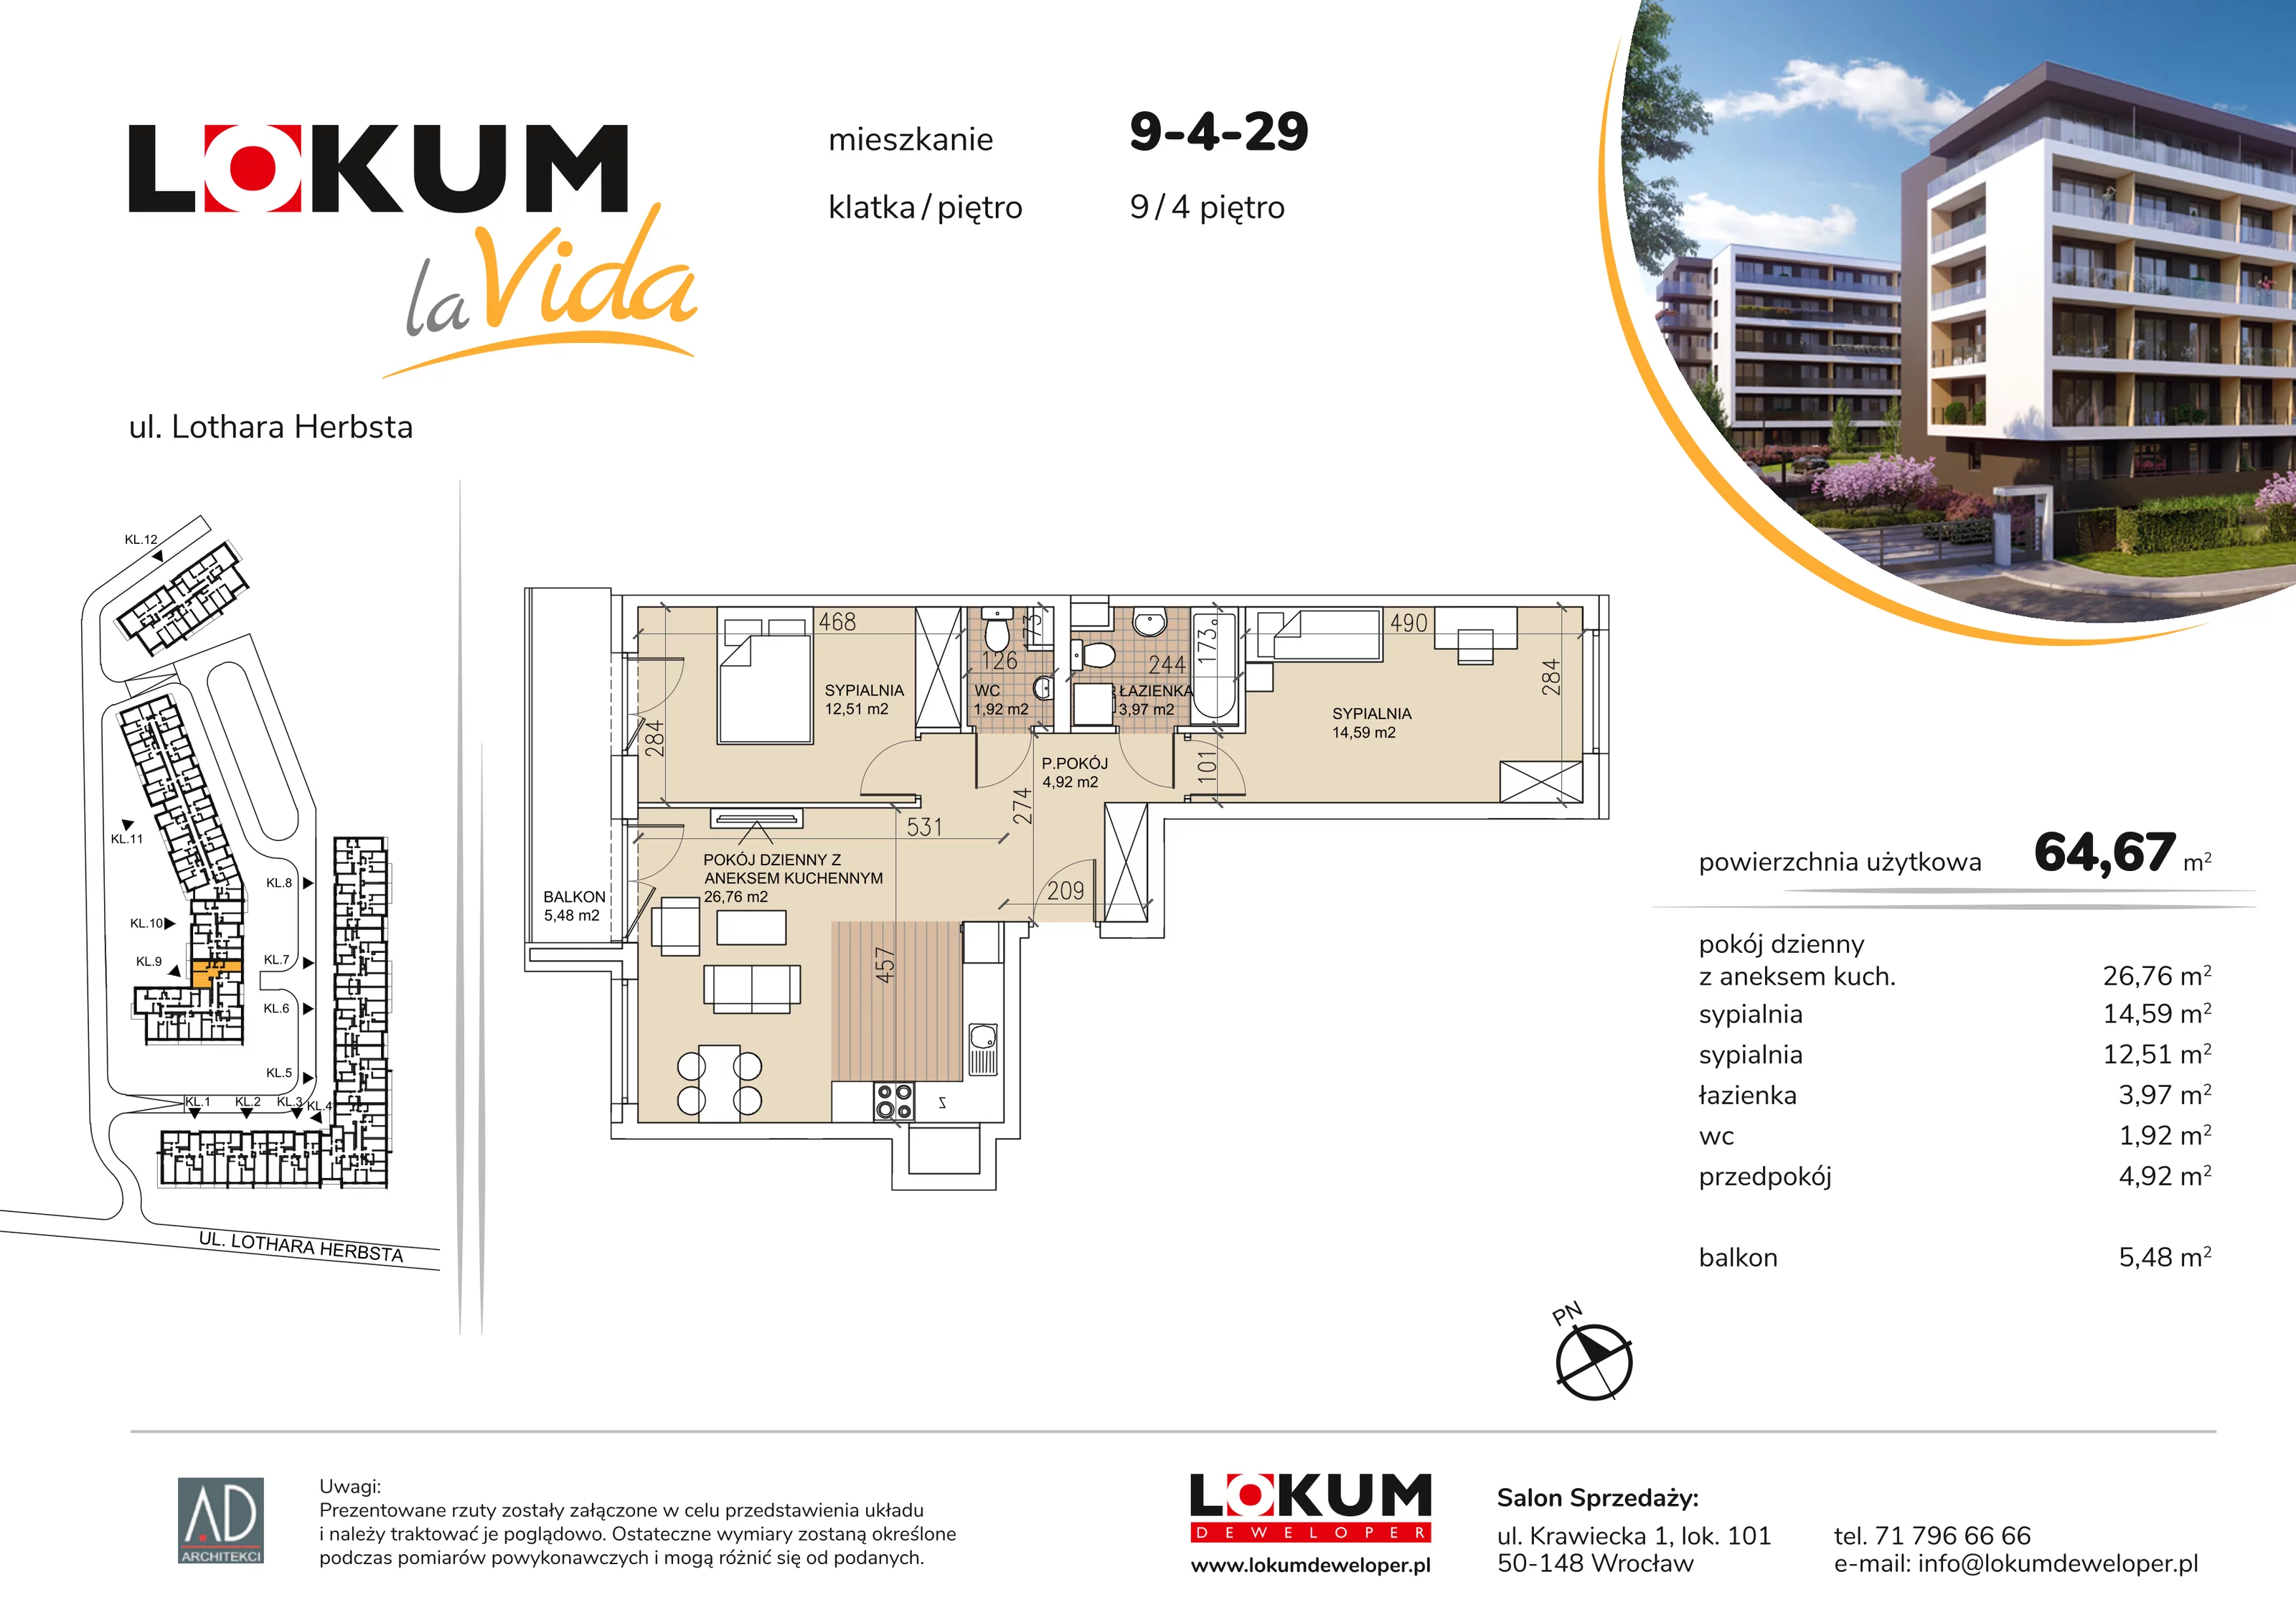 Mieszkanie 64,67 m², piętro 4, oferta nr 9-4-29, Lokum la Vida, Wrocław, Sołtysowice, ul. Lothara Herbsta